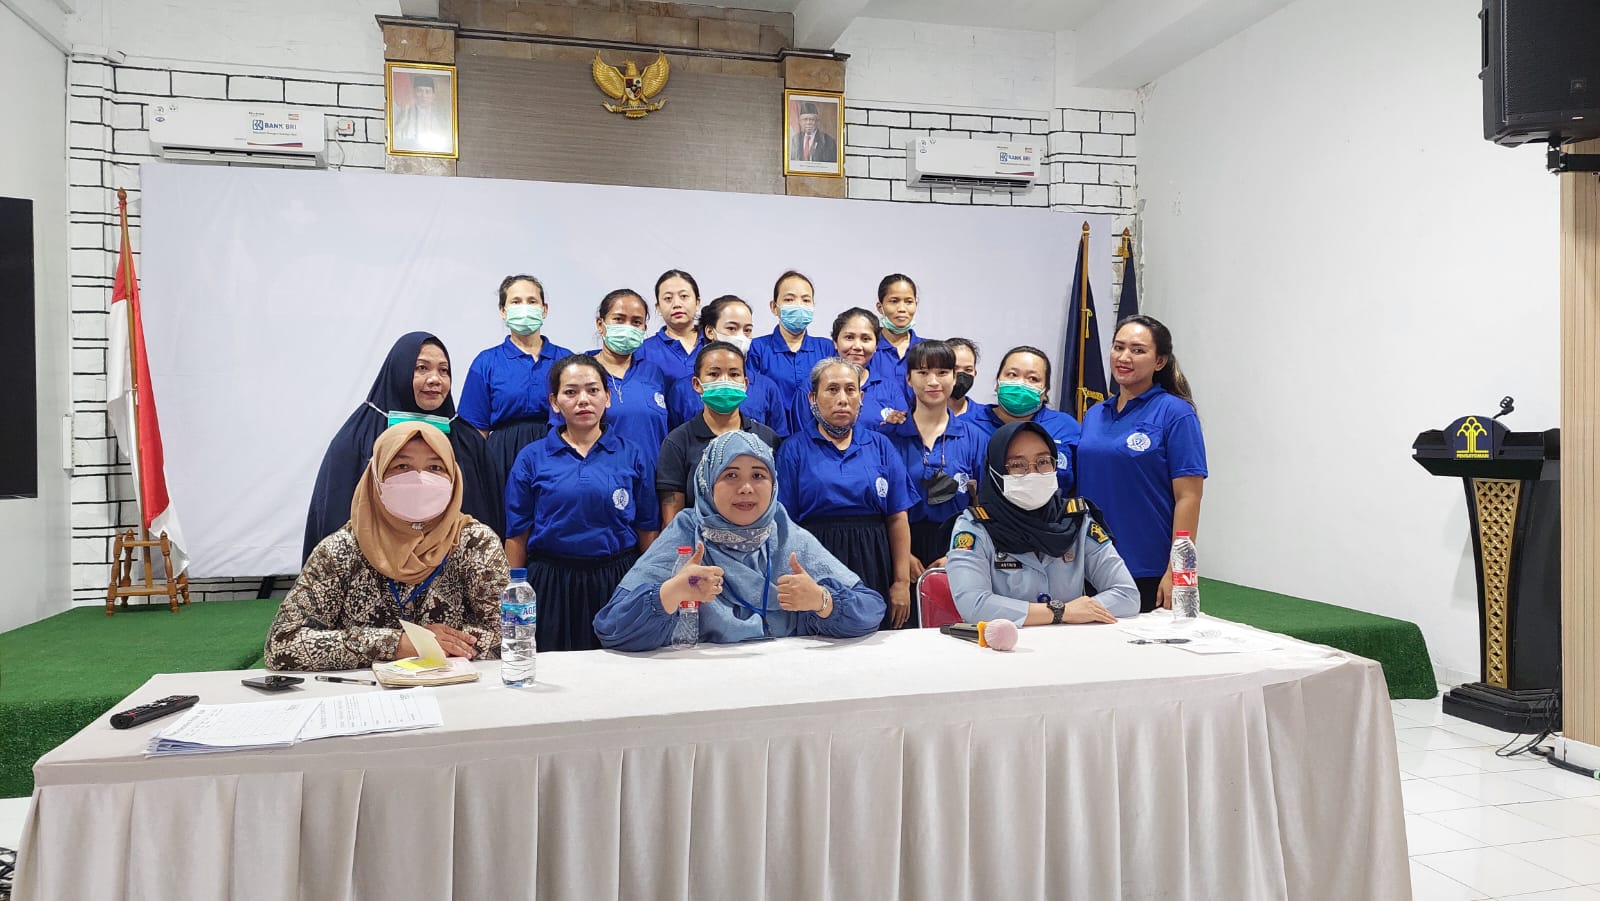 Jasa Konsultan HRD Berkualitas  Melayani Wilayah Bengkulu Hub 6281386200445